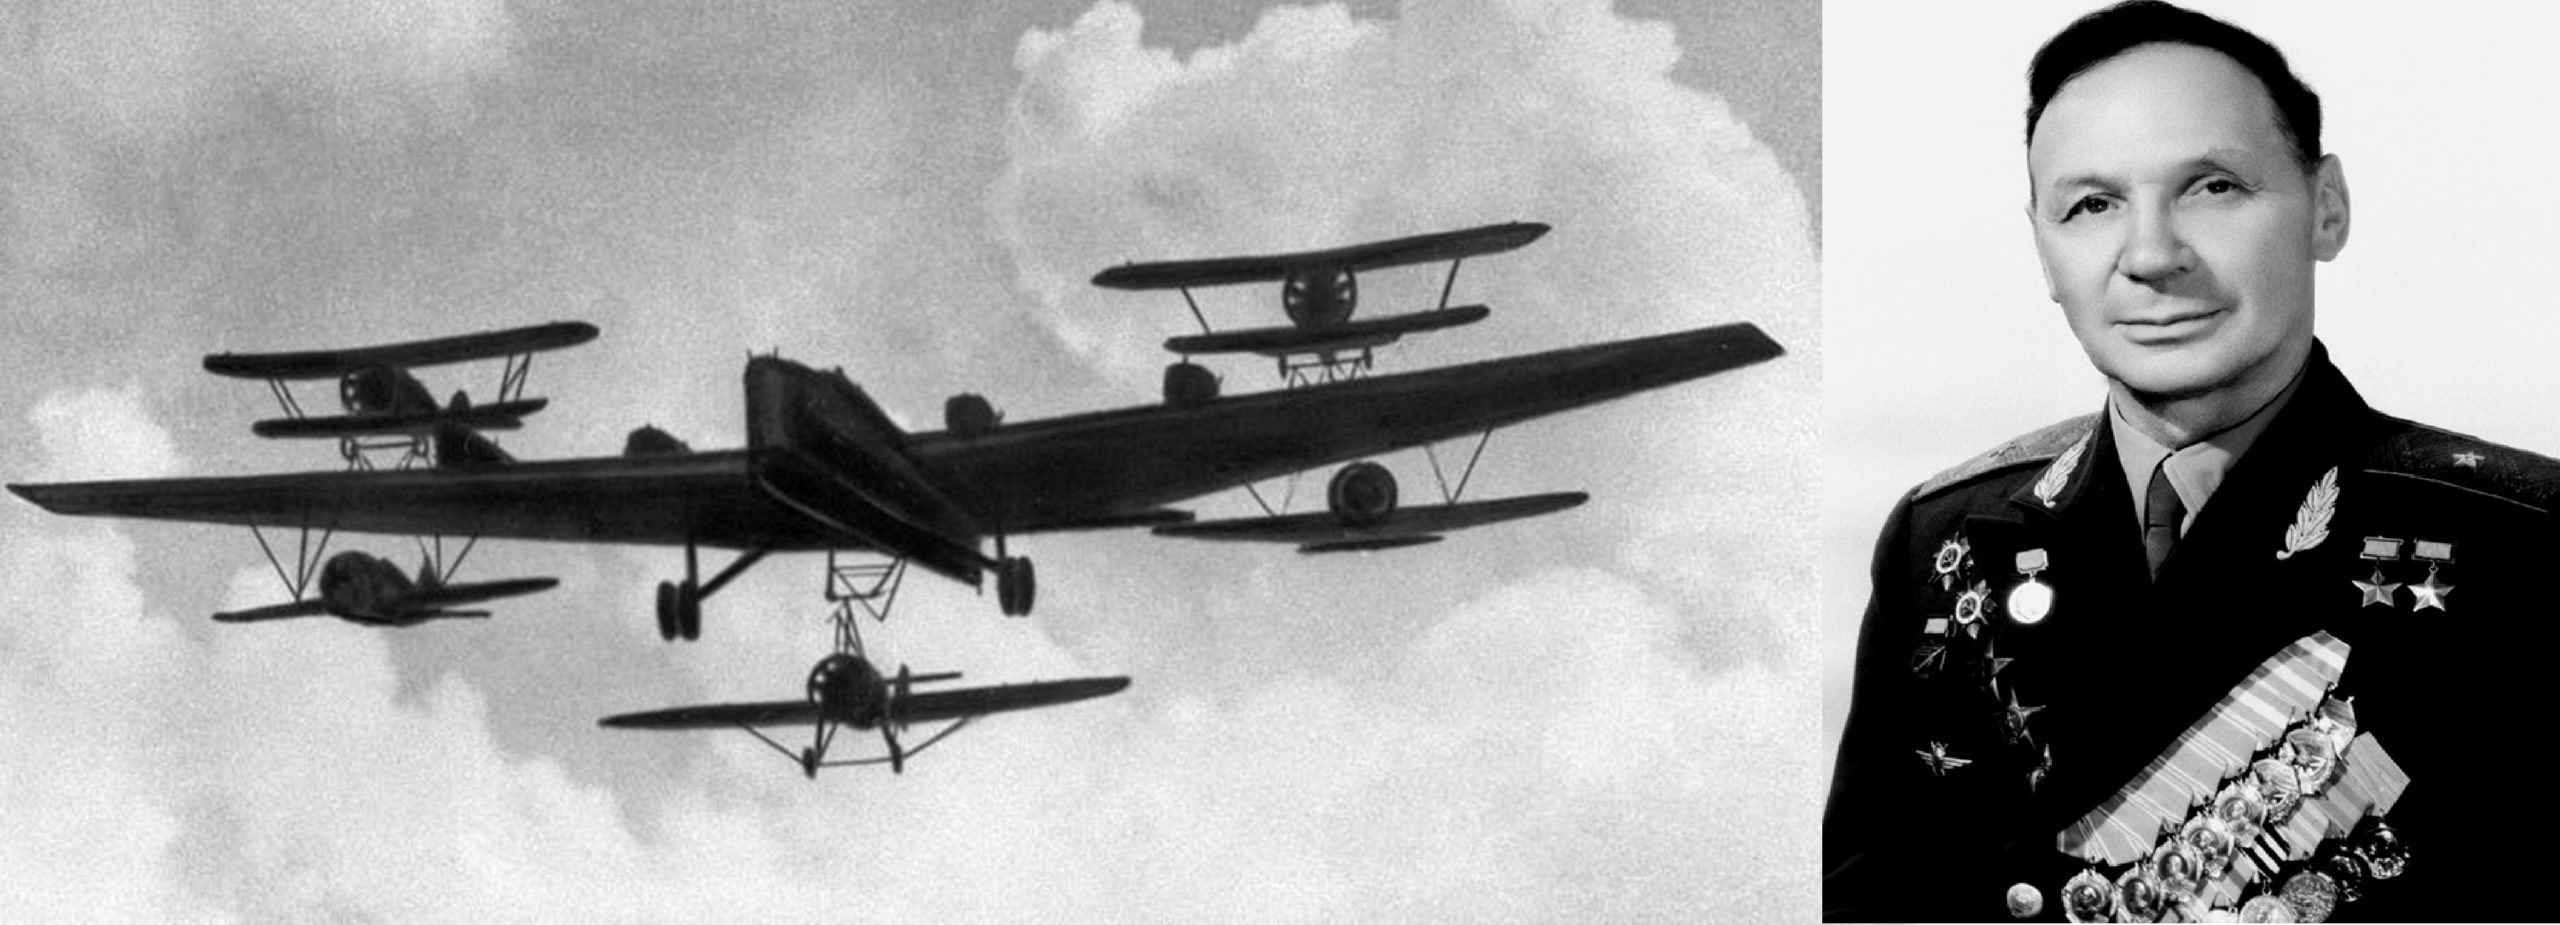 Τα ιπτάμενα αεροπλανοφόρα της ΕΣΣΔ που έδρασαν εναντίον των Γερμανών. Ποιος ήταν ο Έλληνας πιλότος τους;